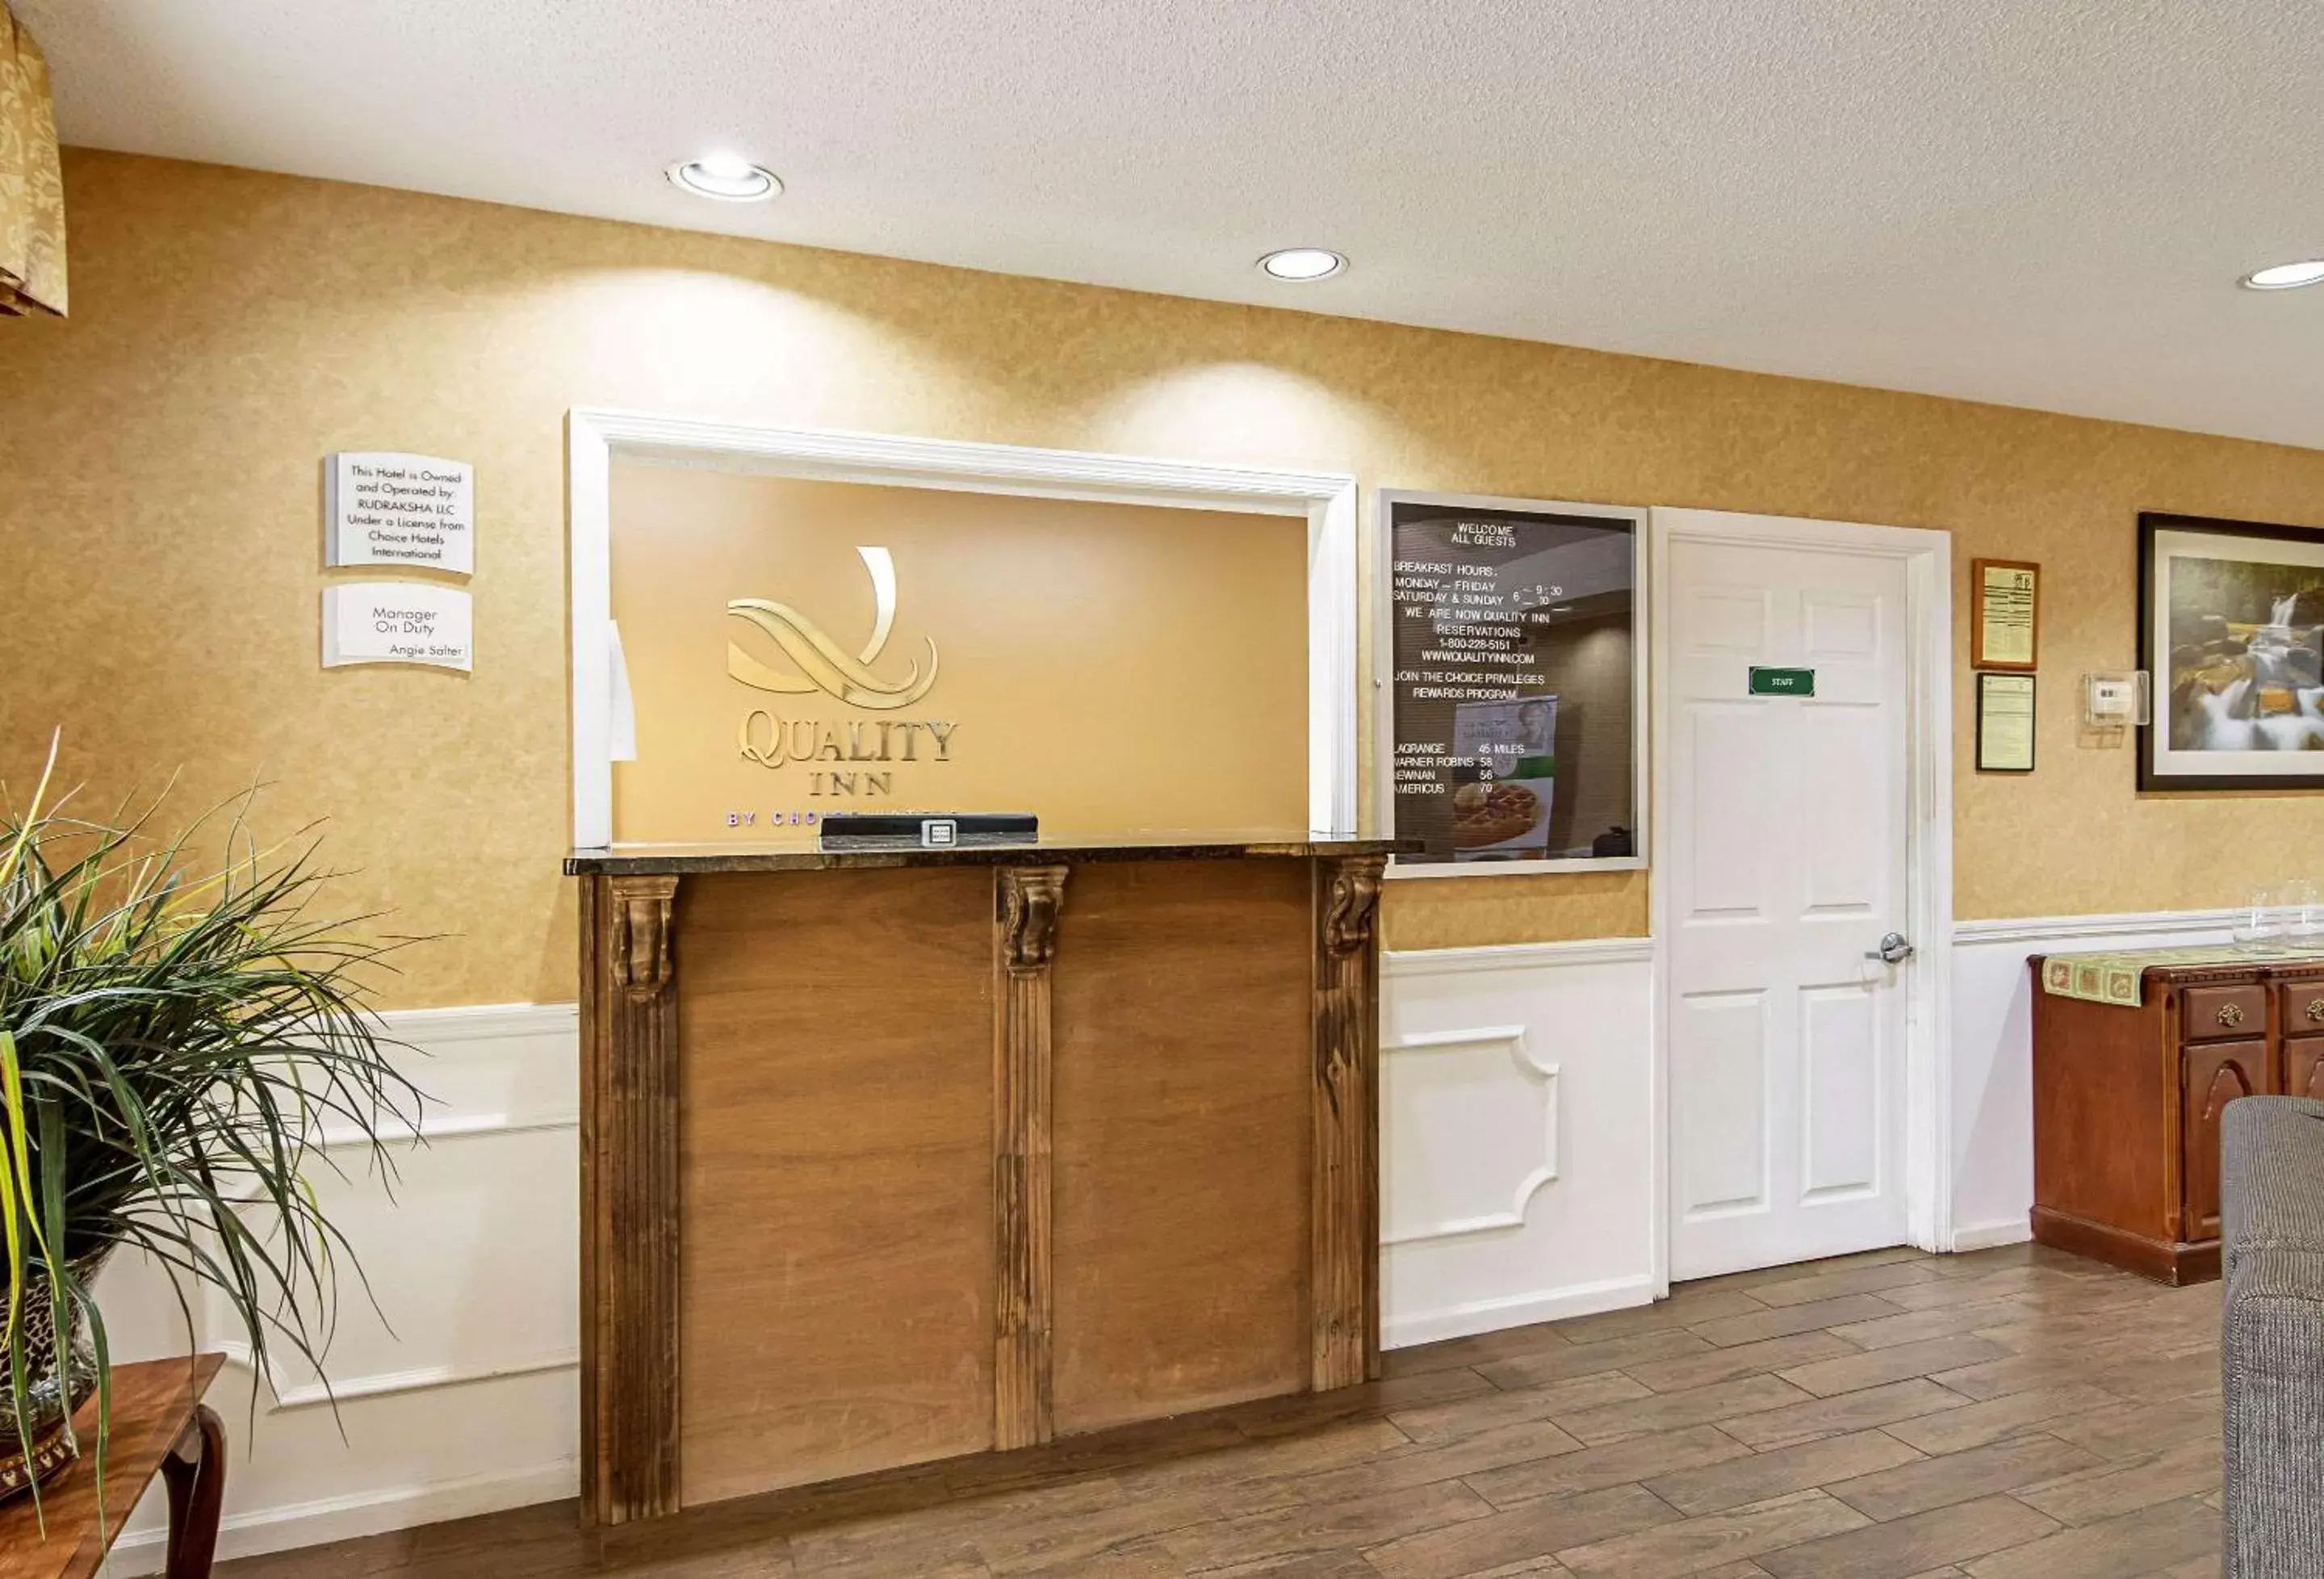 Lobby or reception, Lobby/Reception in Quality Inn Thomaston